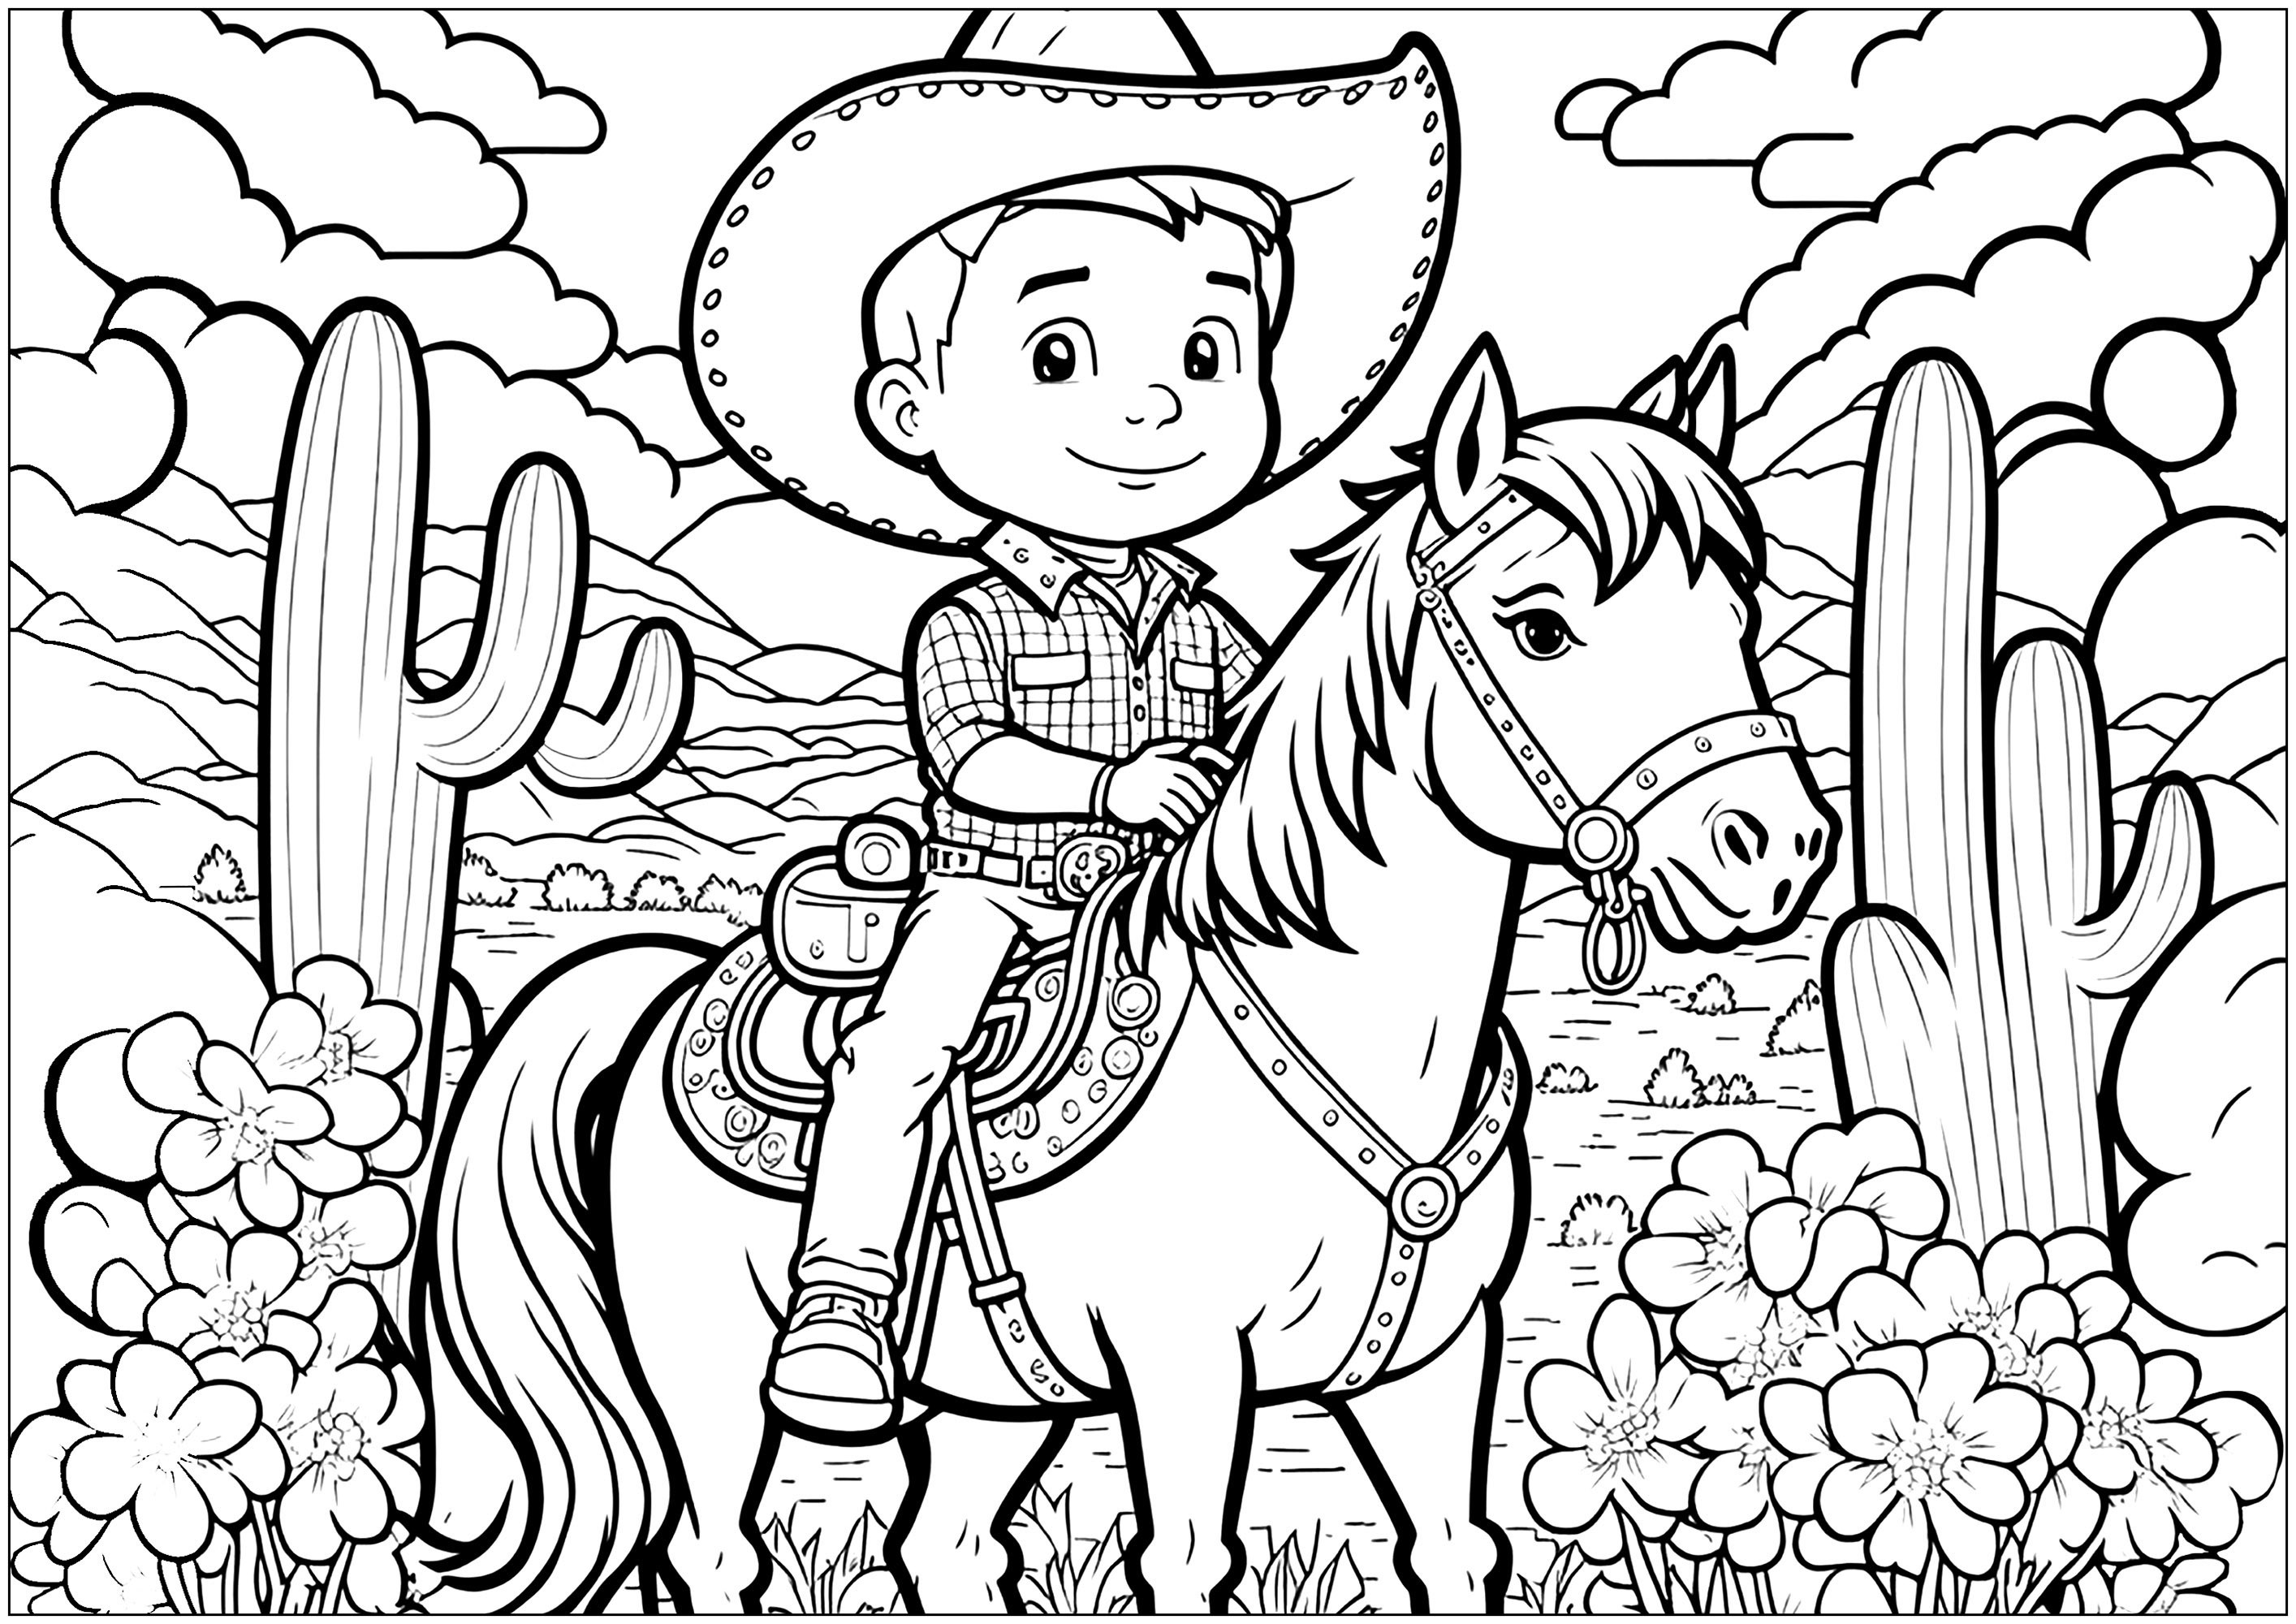 Um jovem cowboy a cavalo, com um fundo rico (montanhas, cactos, nuvens, etc.).